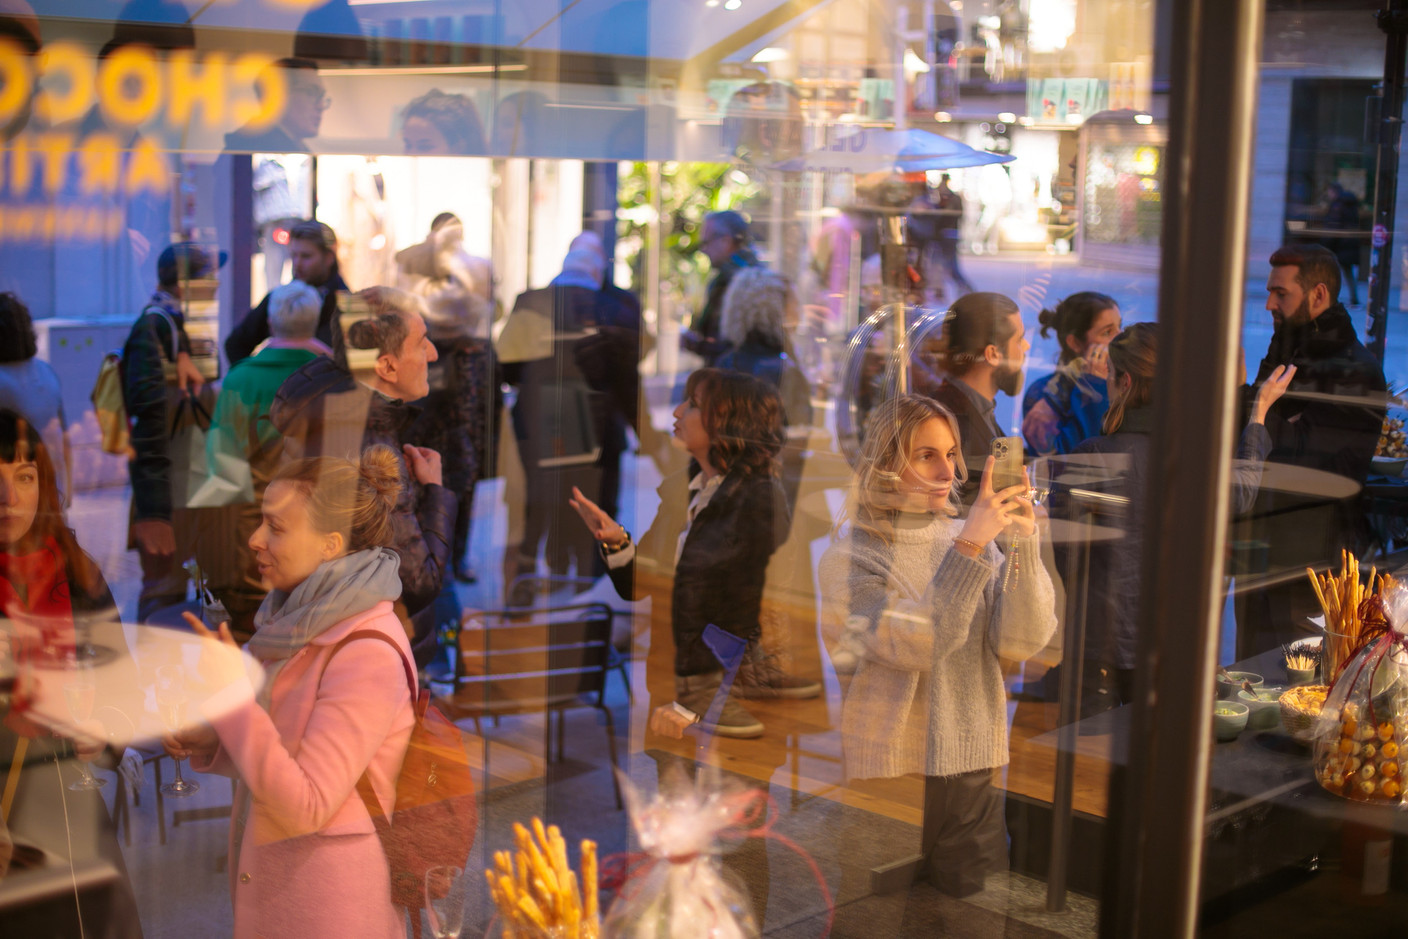 La nouvelle et très élégante boutique Genaveh a été officiellement inaugurée le jeudi 17 mars, en présence de la presse, de personnalités de la scène gastronomique luxembourgeoise et de proches d’Alexandra Kahn… (Photo: Matic Zorman/Maison Moderne)